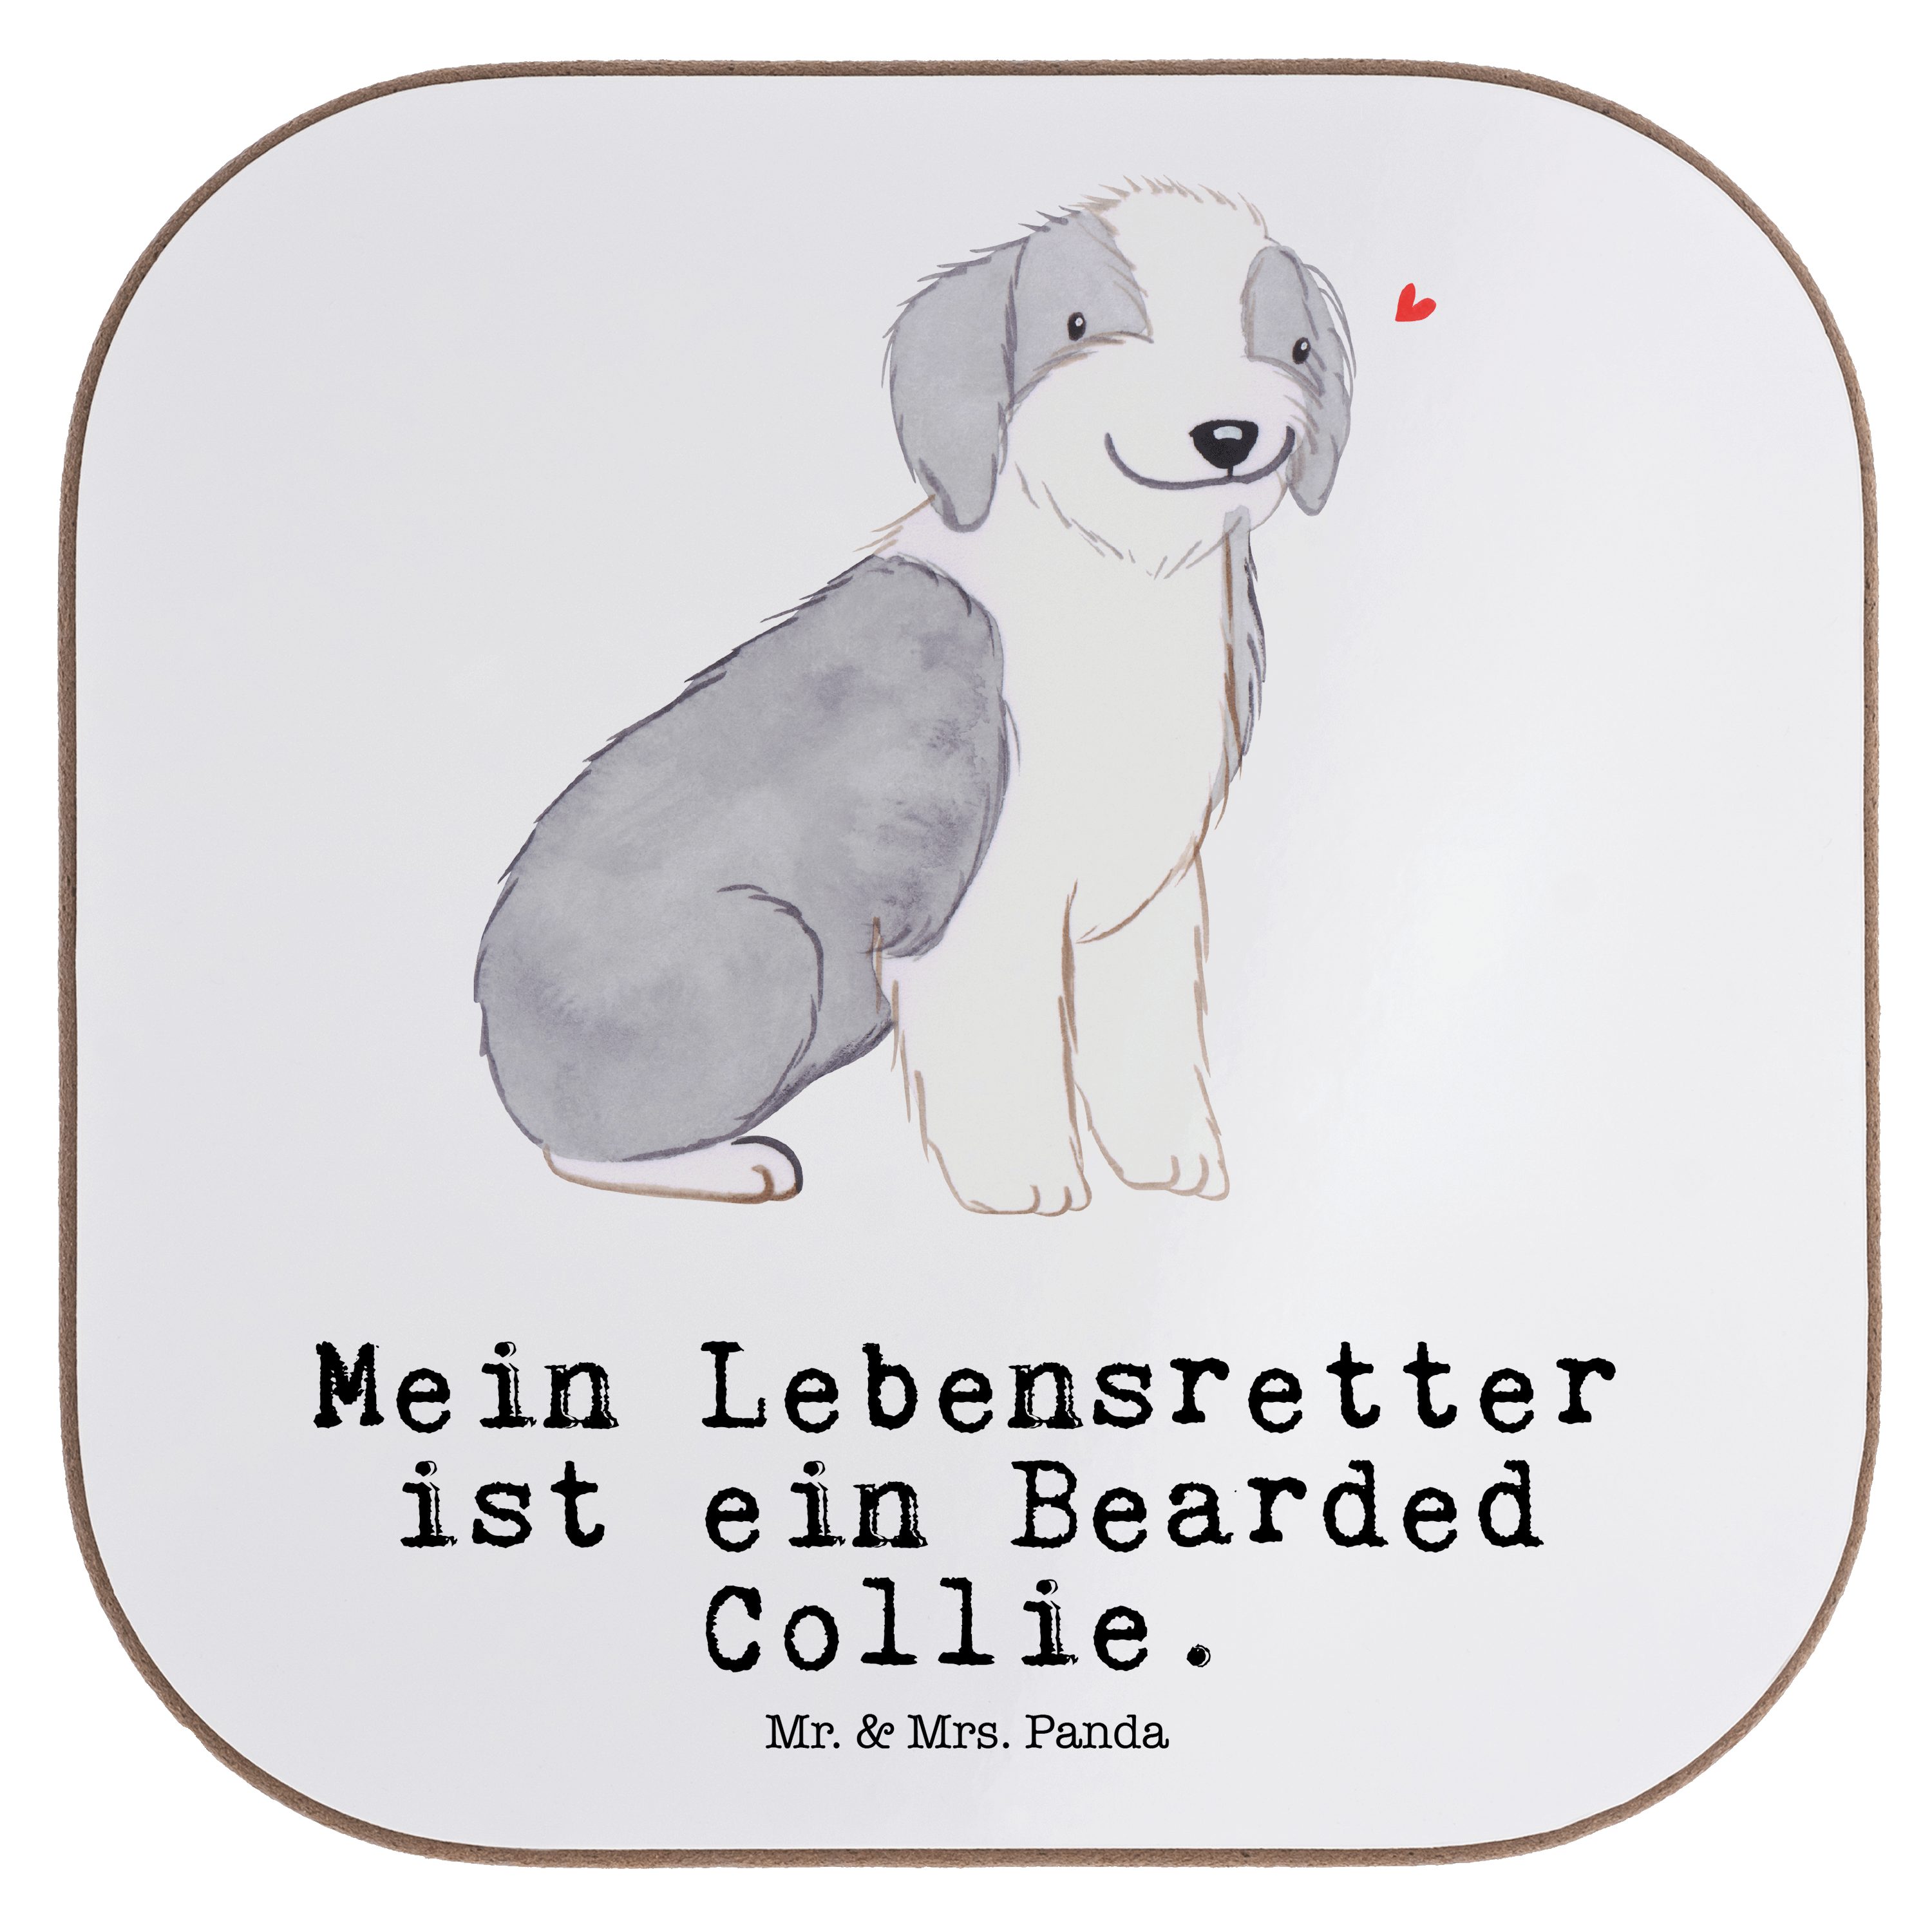 Mr. & Mrs. Panda Getränkeuntersetzer Bearded Collie Lebensretter - Weiß - Geschenk, Untersetzer Gläser, We, 1-tlg.